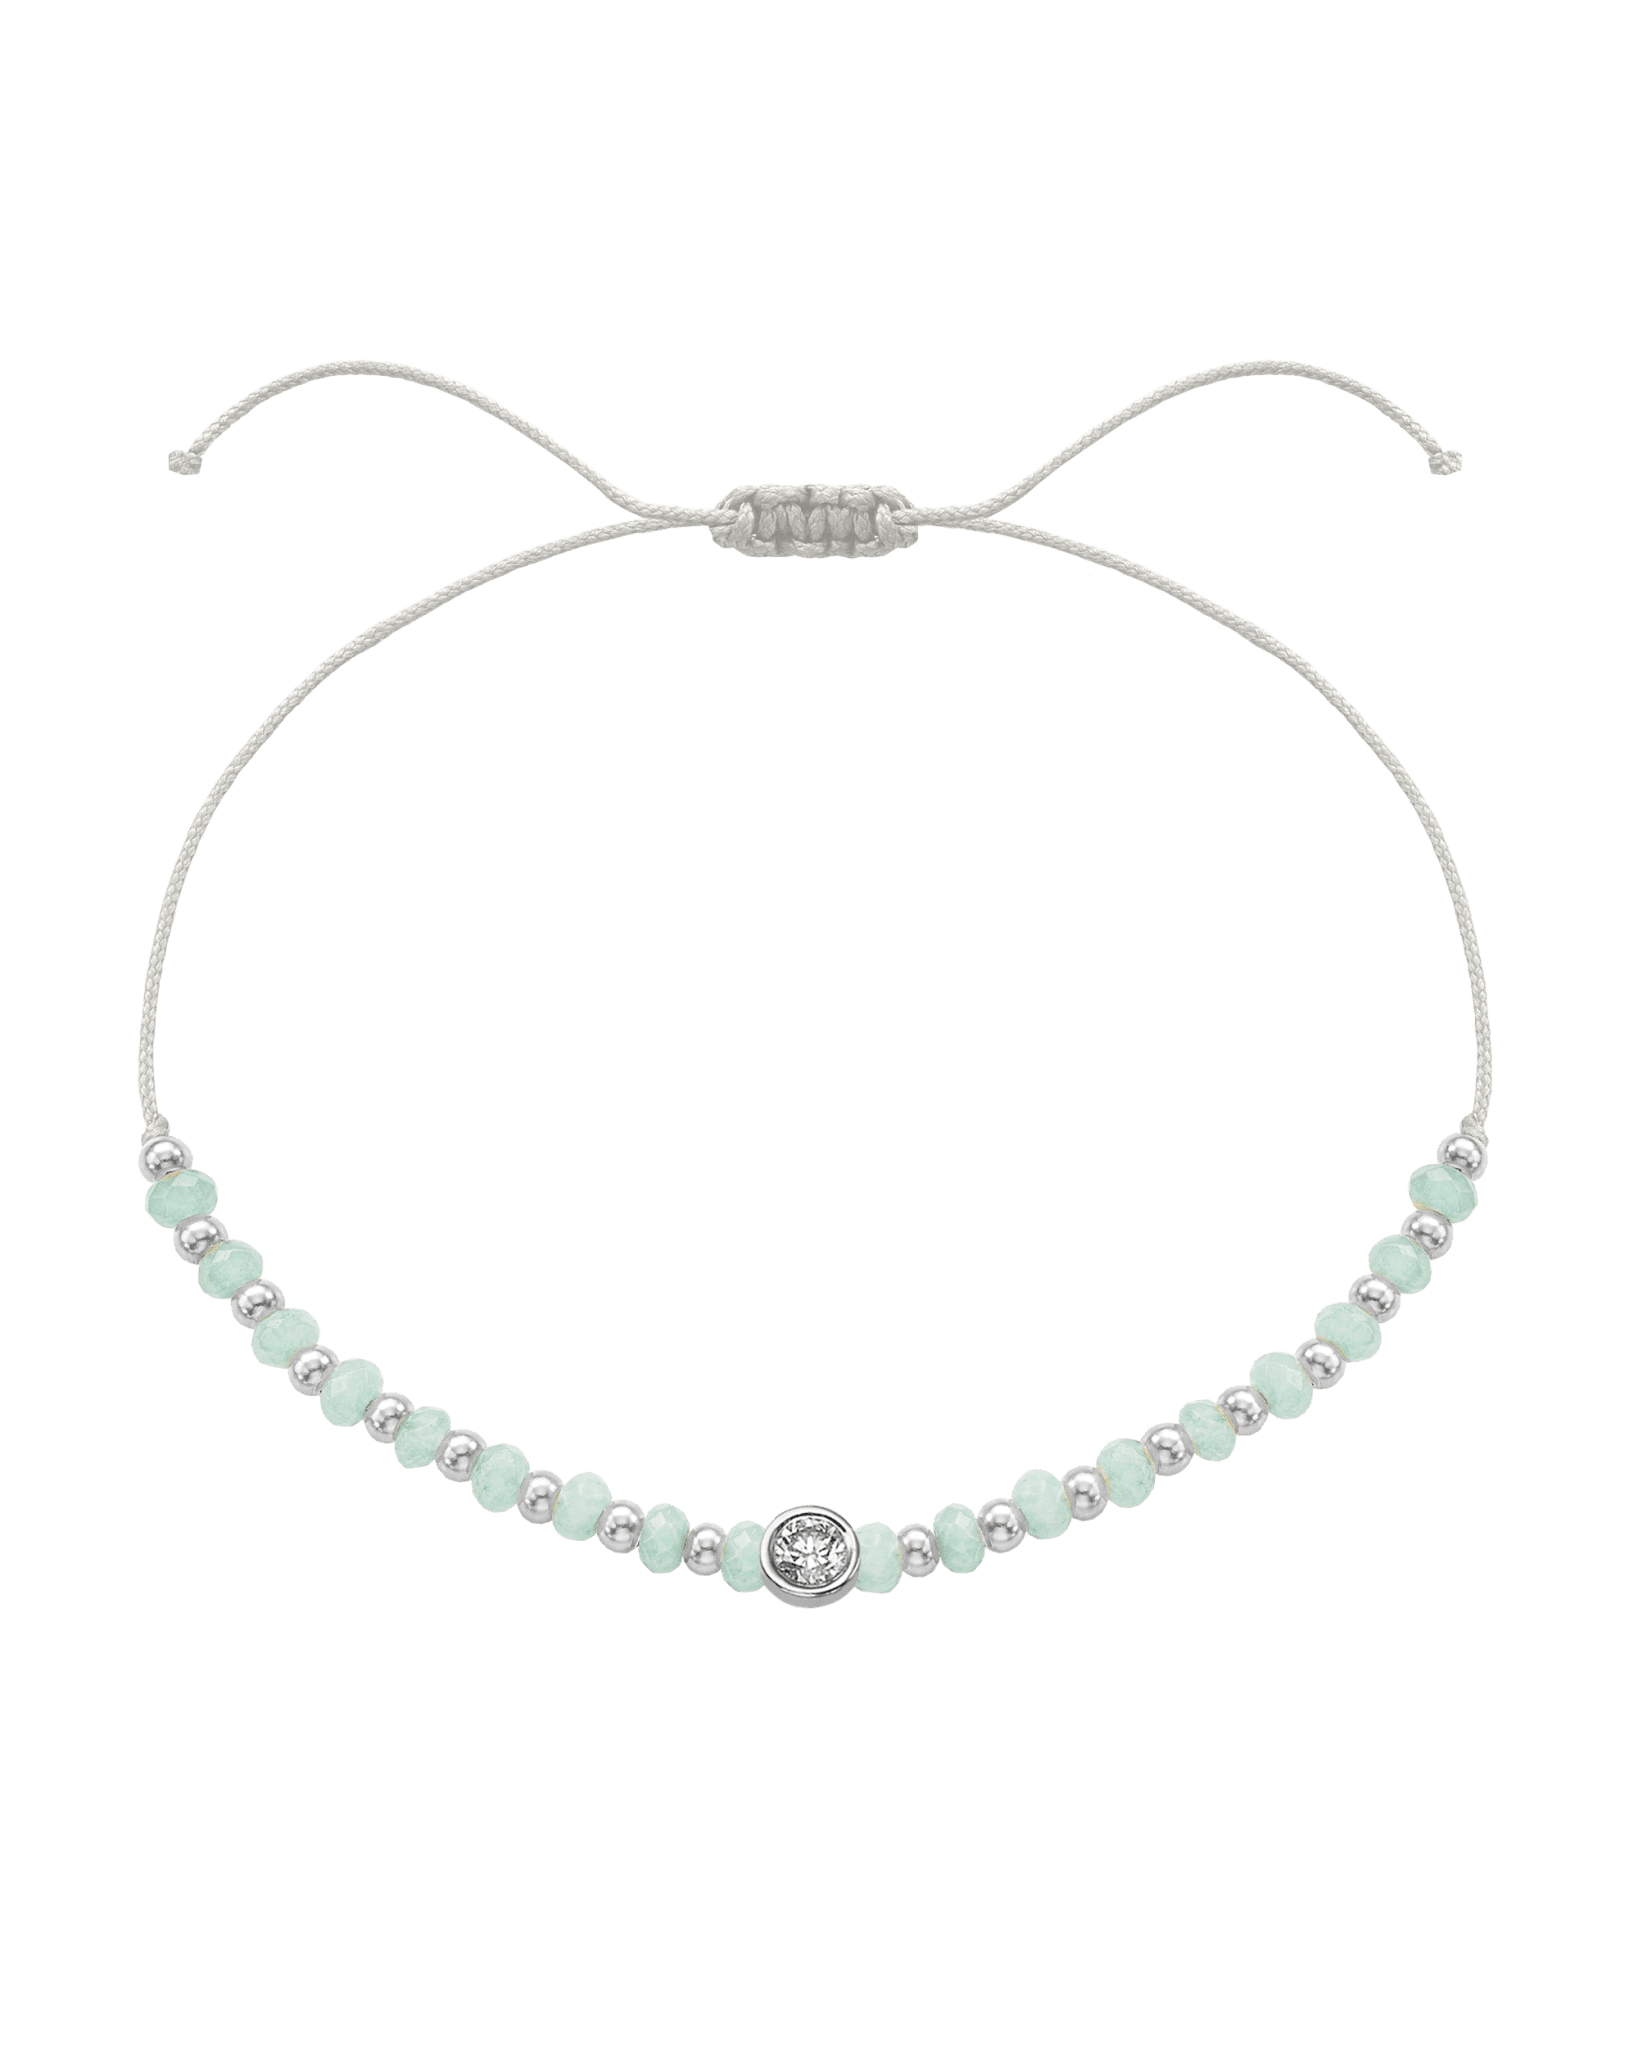 Apatite Gemstone String of Love Bracelet for Inspiration - 14K White Gold Bracelets 14K Solid Gold Pearl Large: 0.1ct 